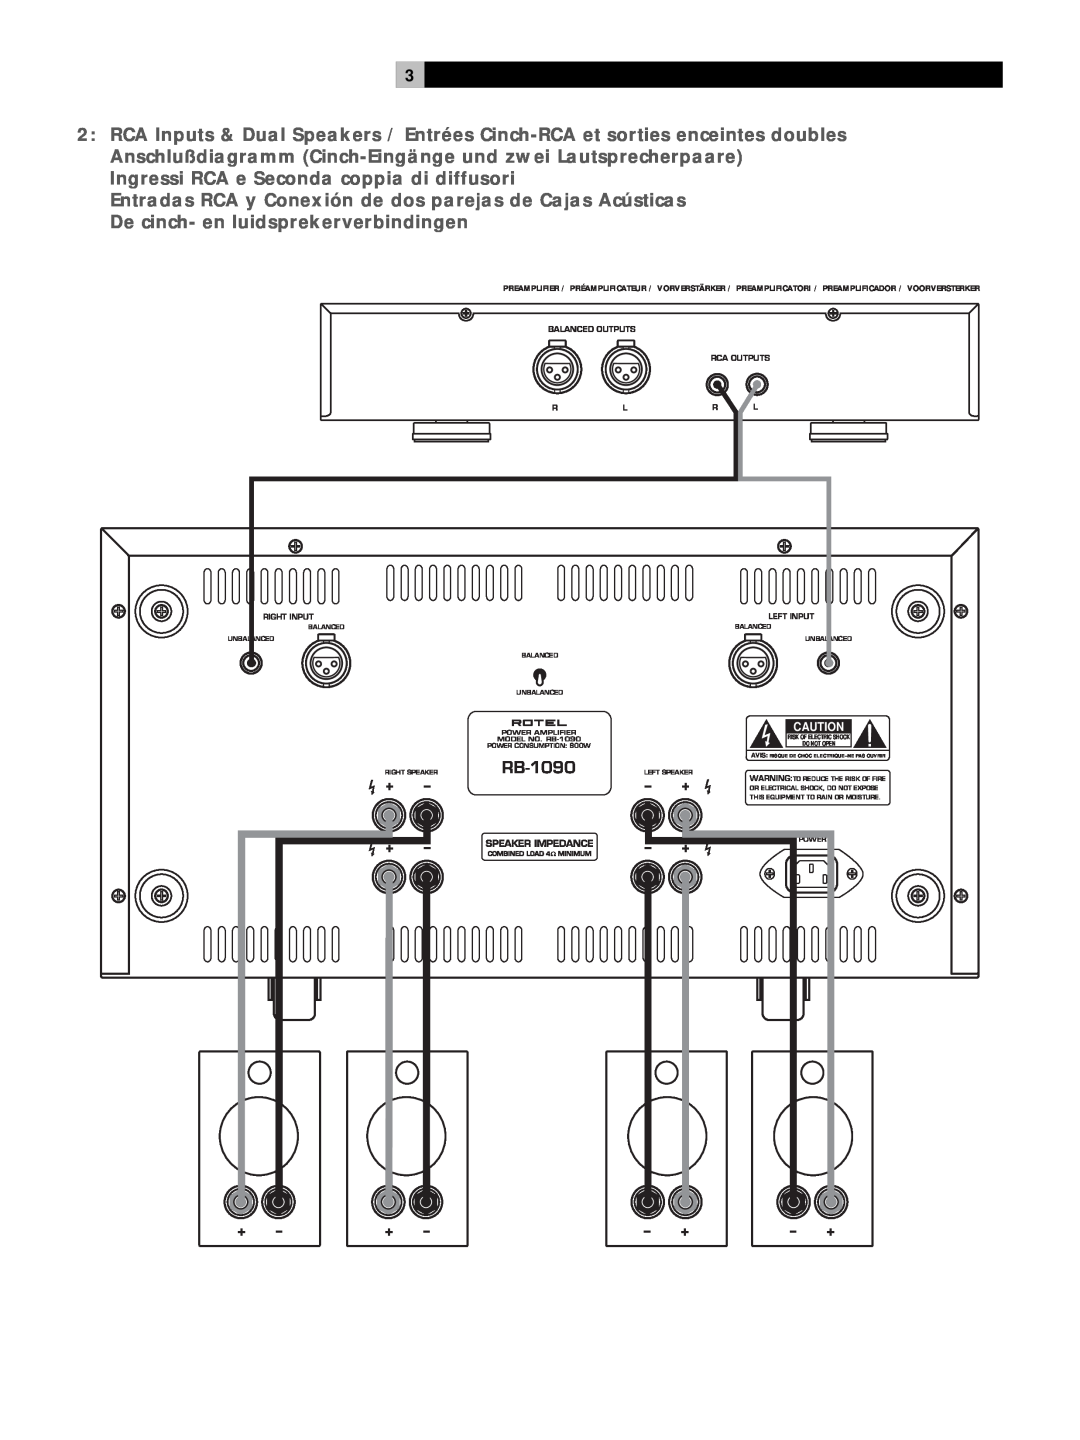 Rotel RB1090 owner manual Ingressi RCA e Seconda coppia di diffusori 